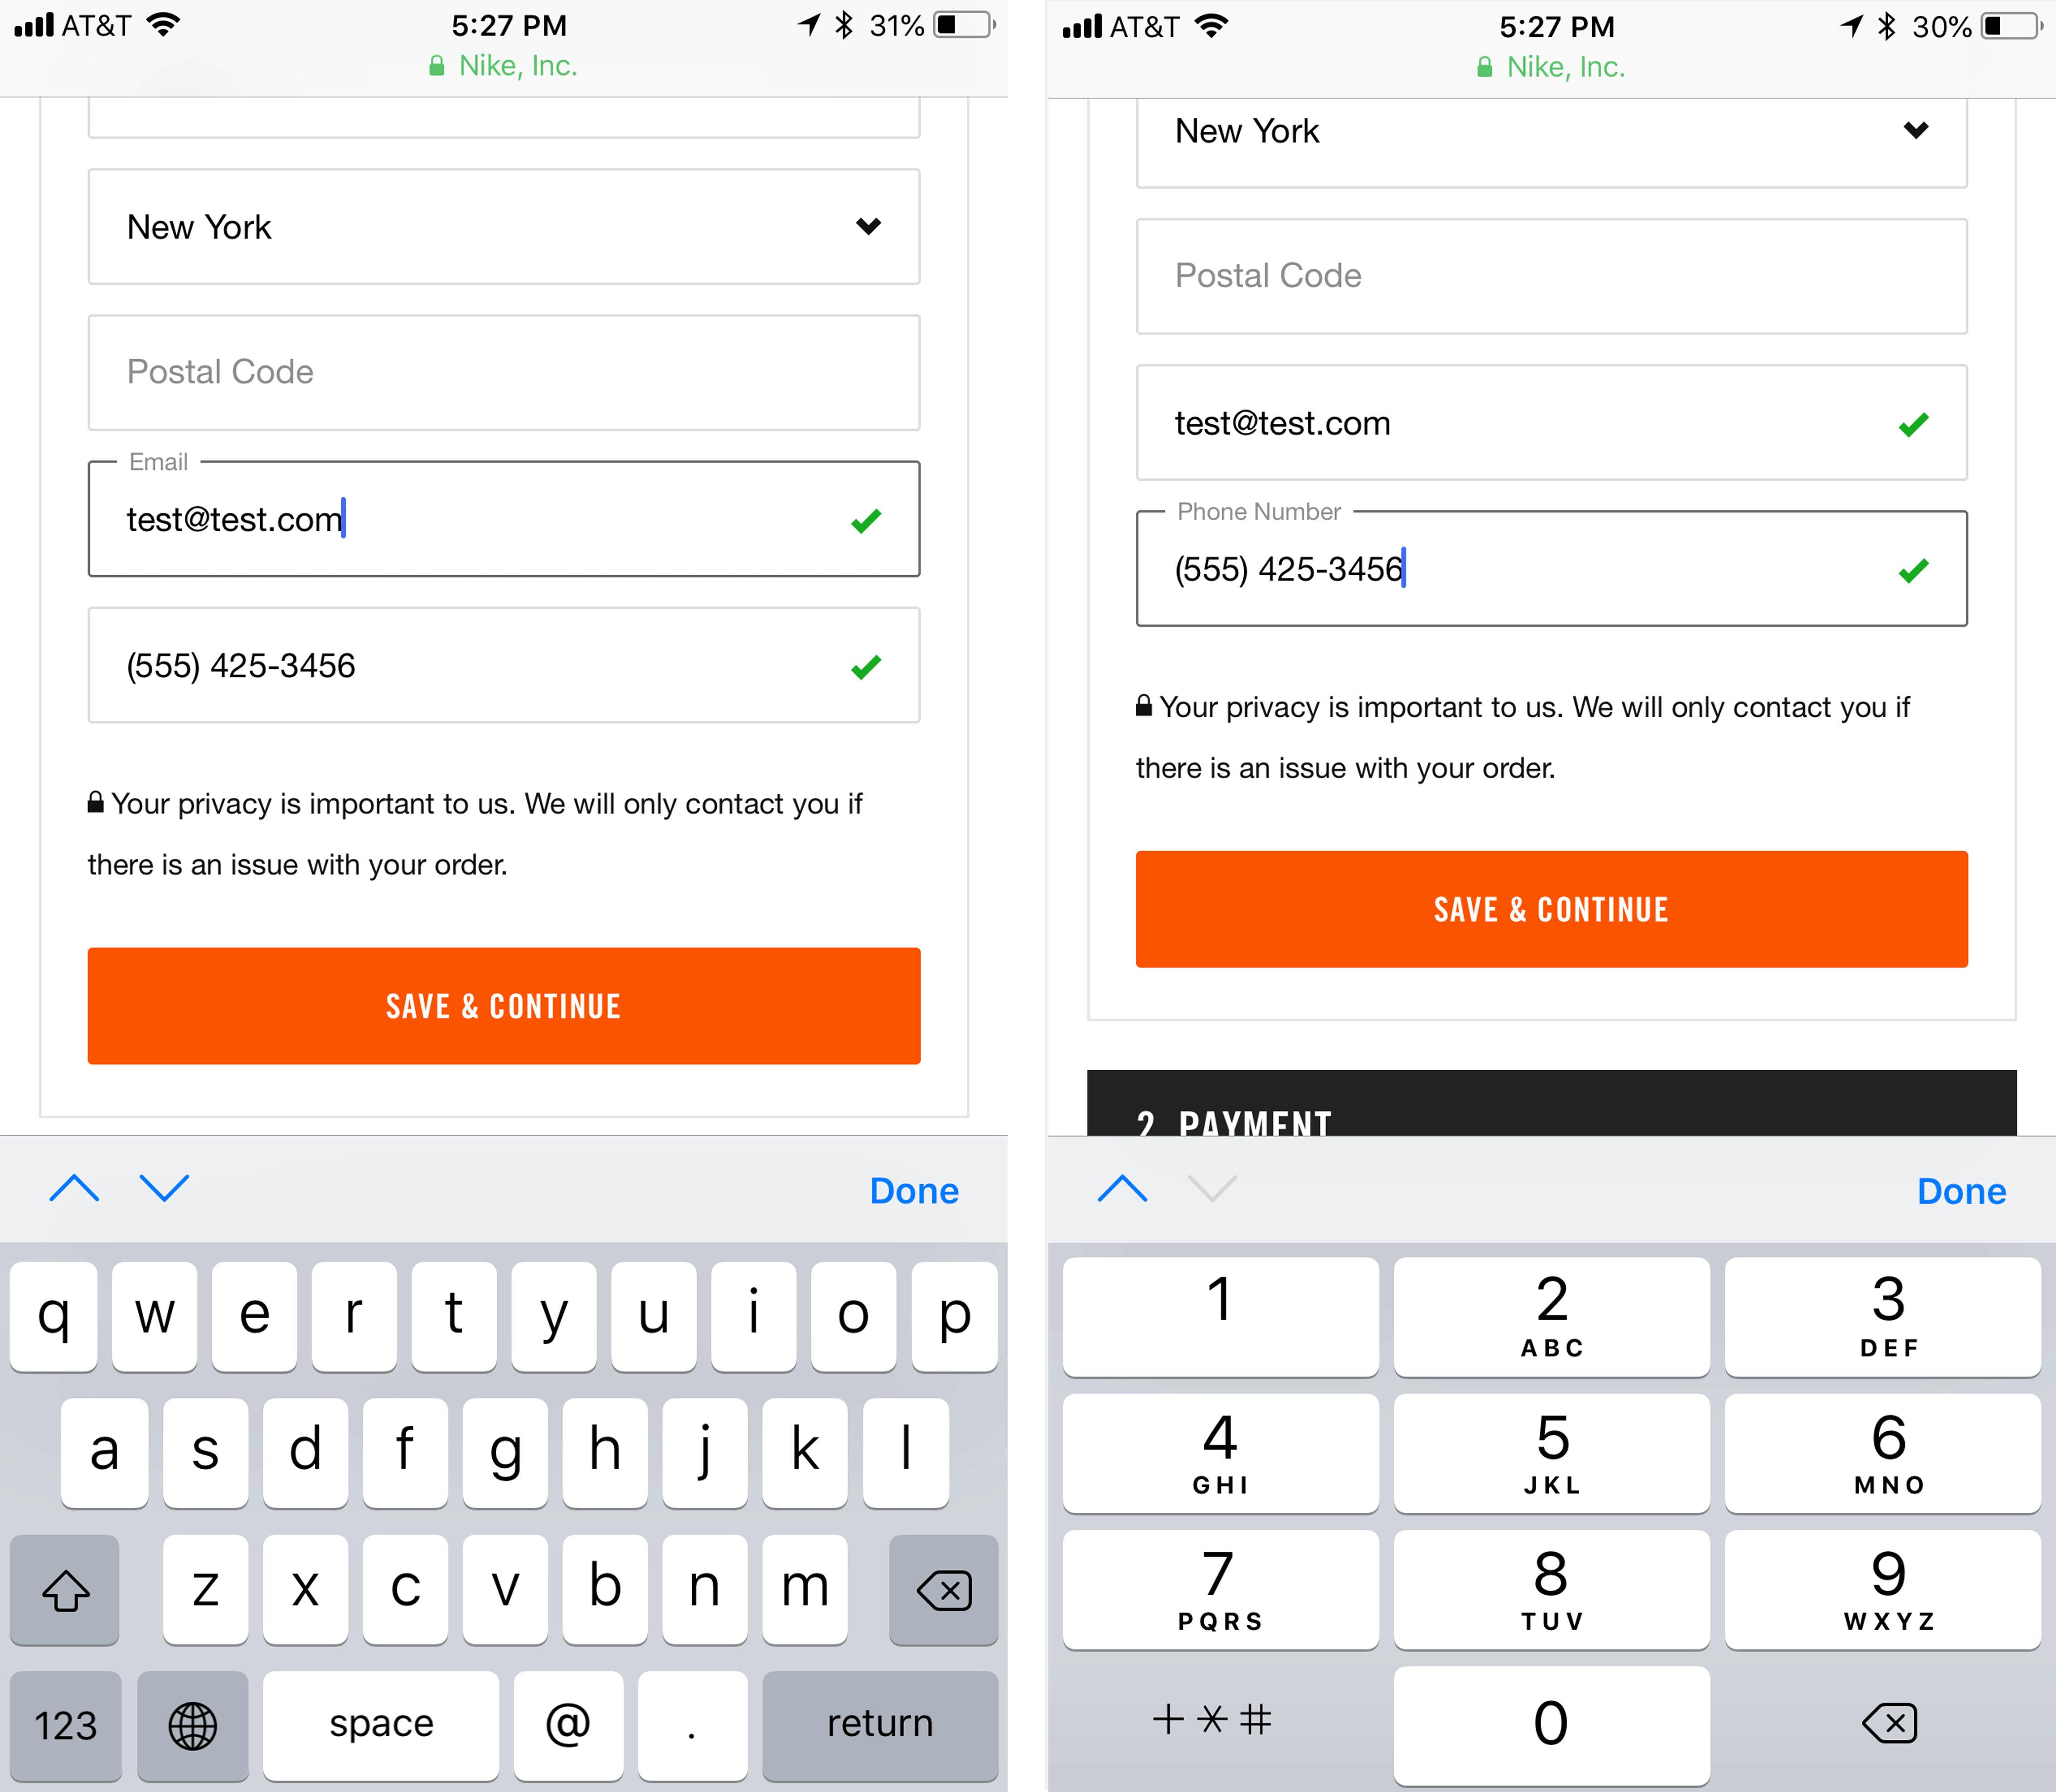 Nike.com показал правильные клавиатуры для полей электронной почты (слева) и номера телефона (справа).